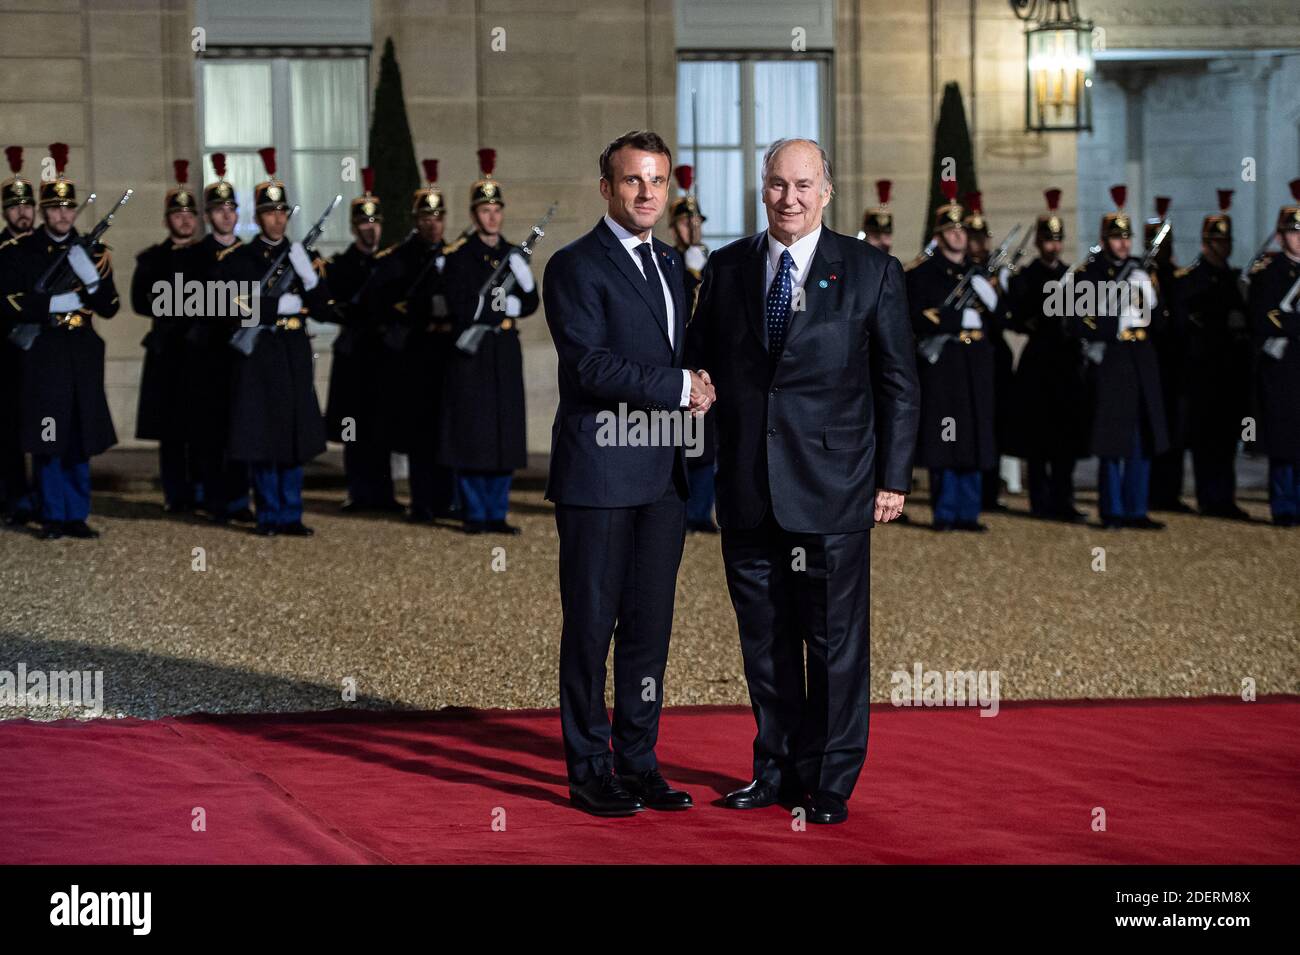 Il presidente francese Emmanuel Macron saluta il principe Shah Karim al Hussaini Aga Khan IV prima di una cena con i partecipanti al Forum della Pace di Parigi presso l'Elysee Palace, a Parigi, il 11 novembre 2019. Foto di Eliot Blondt/ABACAPRESS.COM Foto Stock